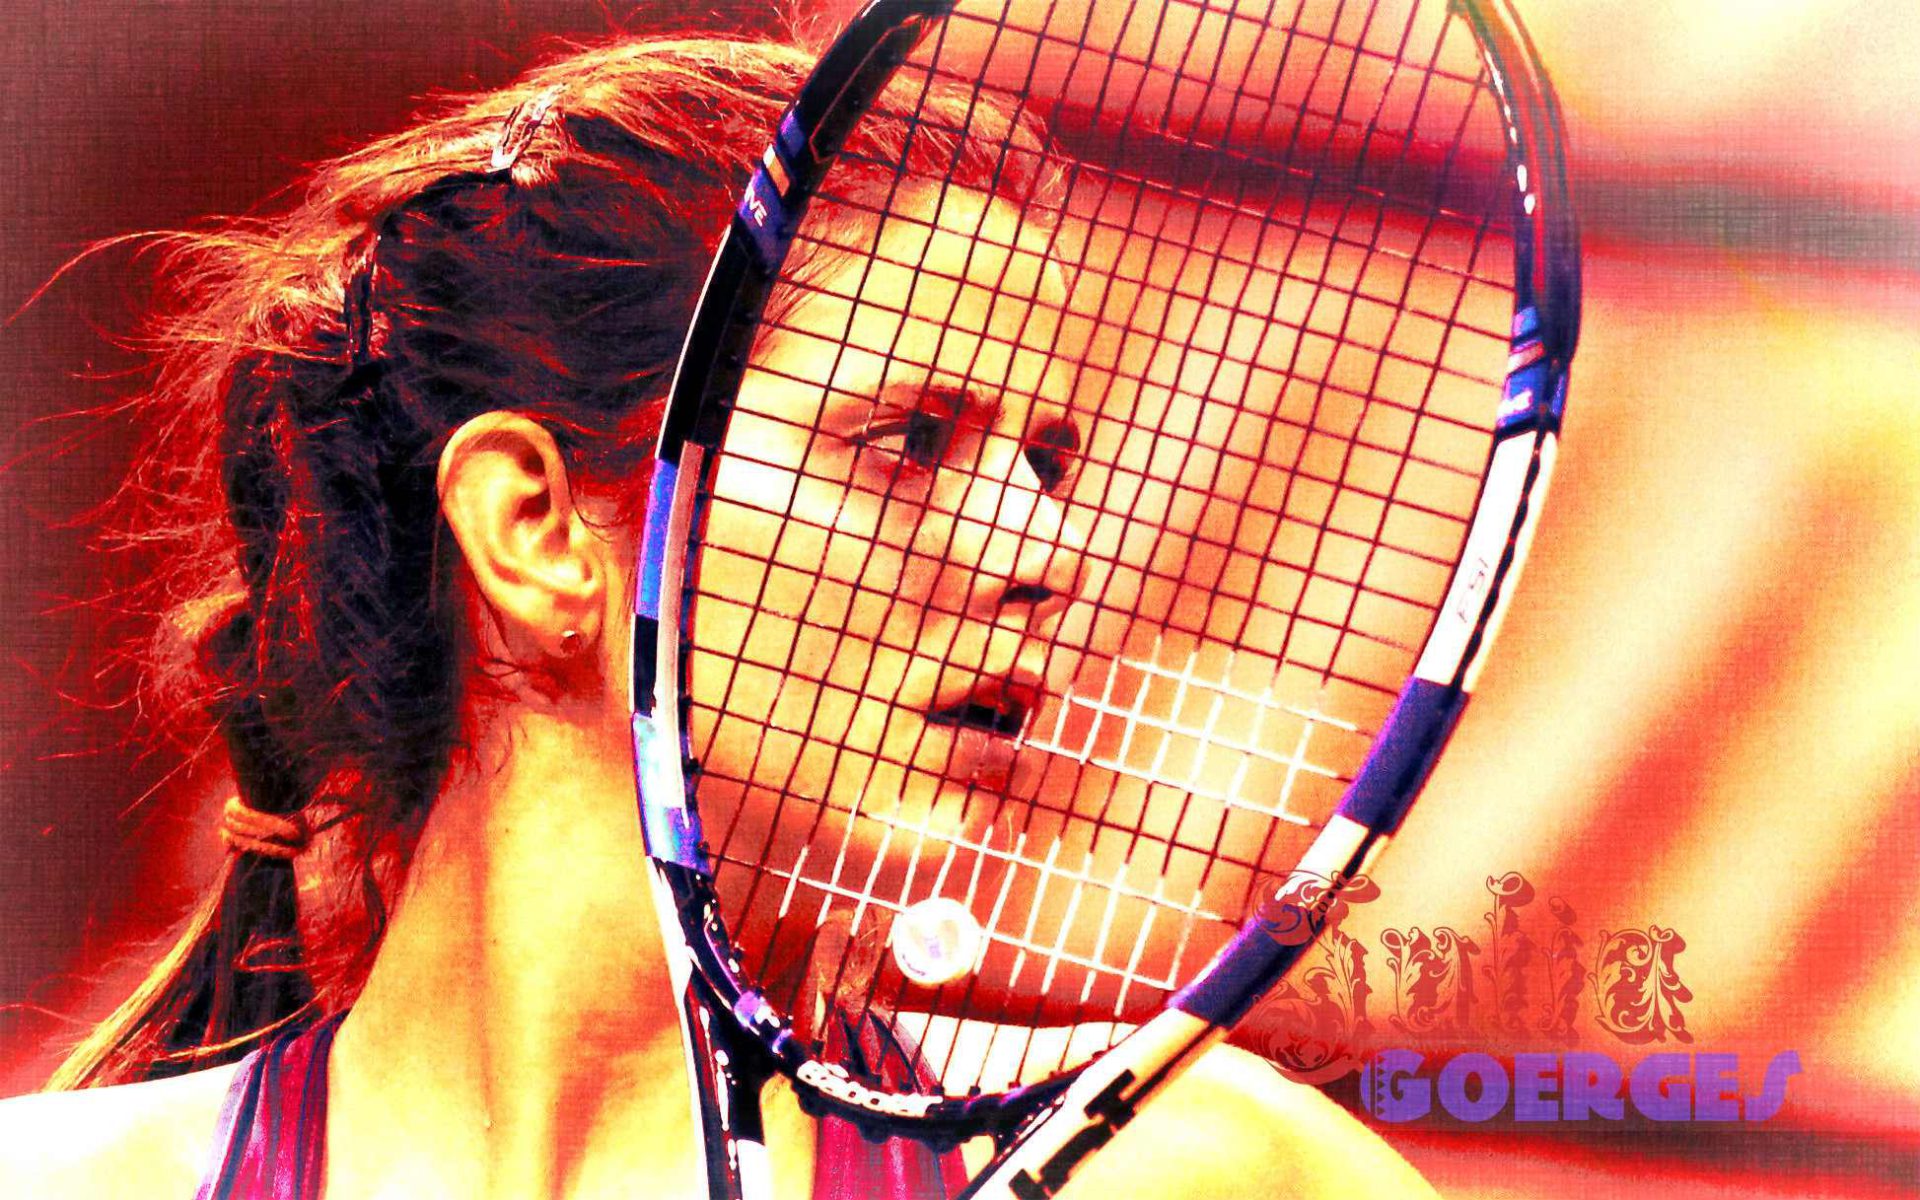 German Julia Goerges Tennis 1920x1200